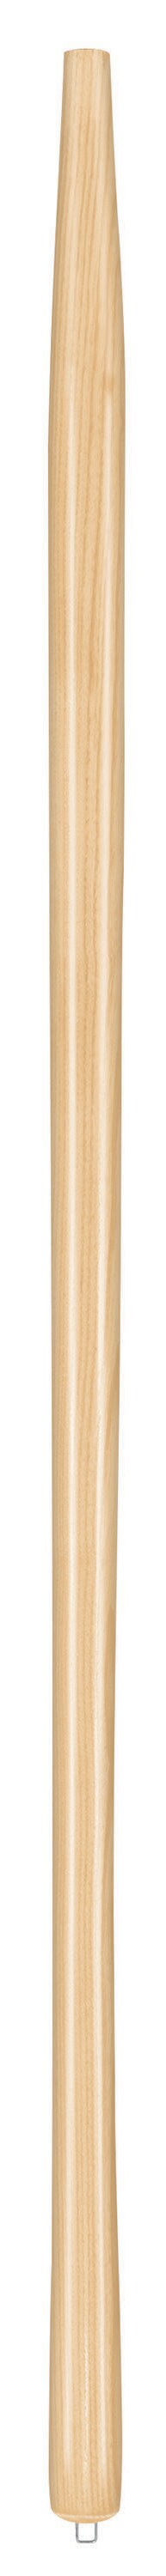 Truper 48-in L Ash Solid-Shank Shovel Handle | MG-PRL-SF 35087 -  7817190